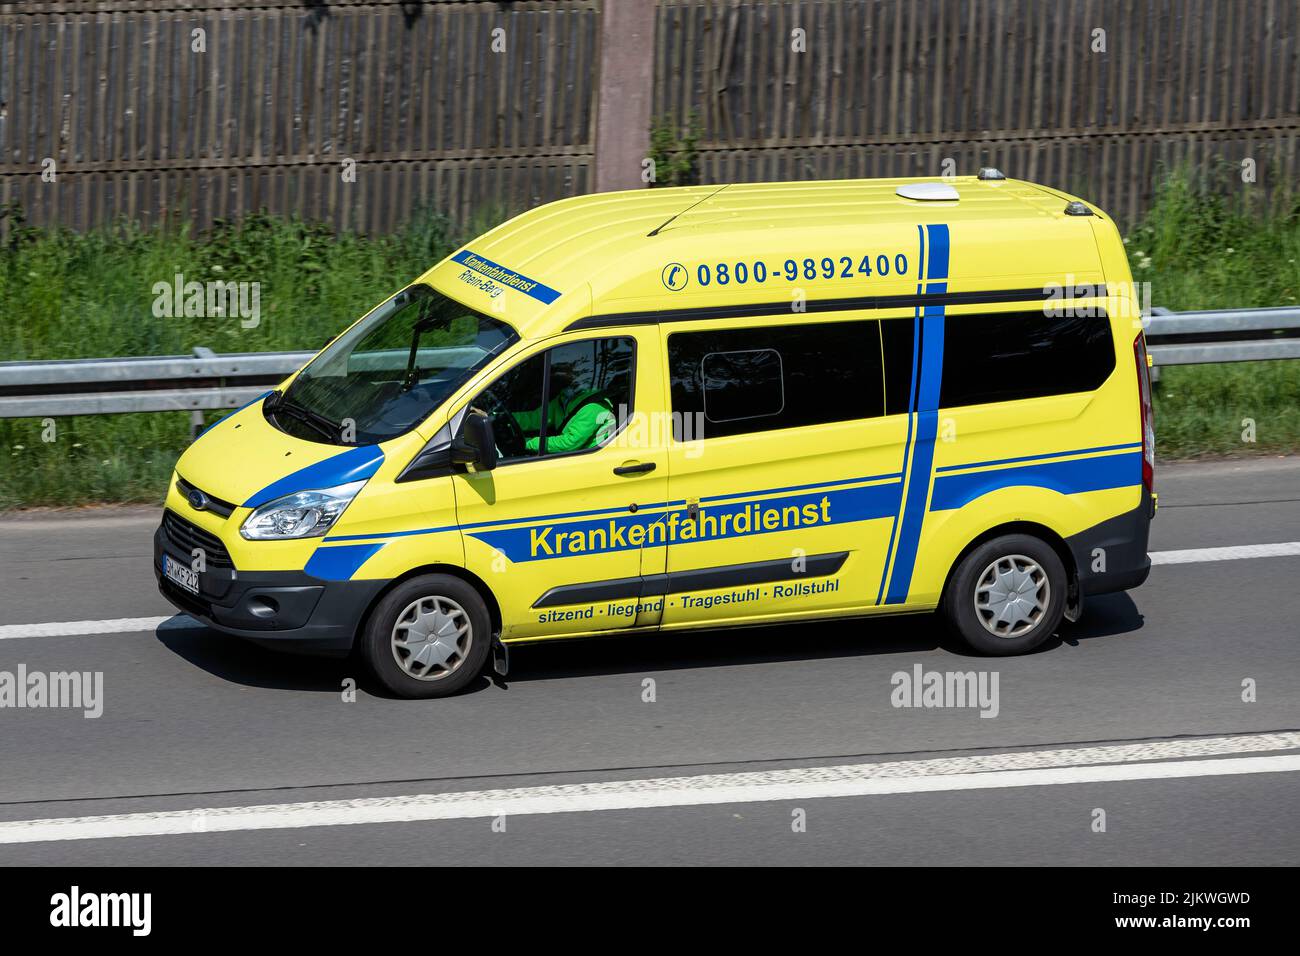 Krankenfahrdienst Rhein-Berg Ford Transit en la autopista Foto de stock